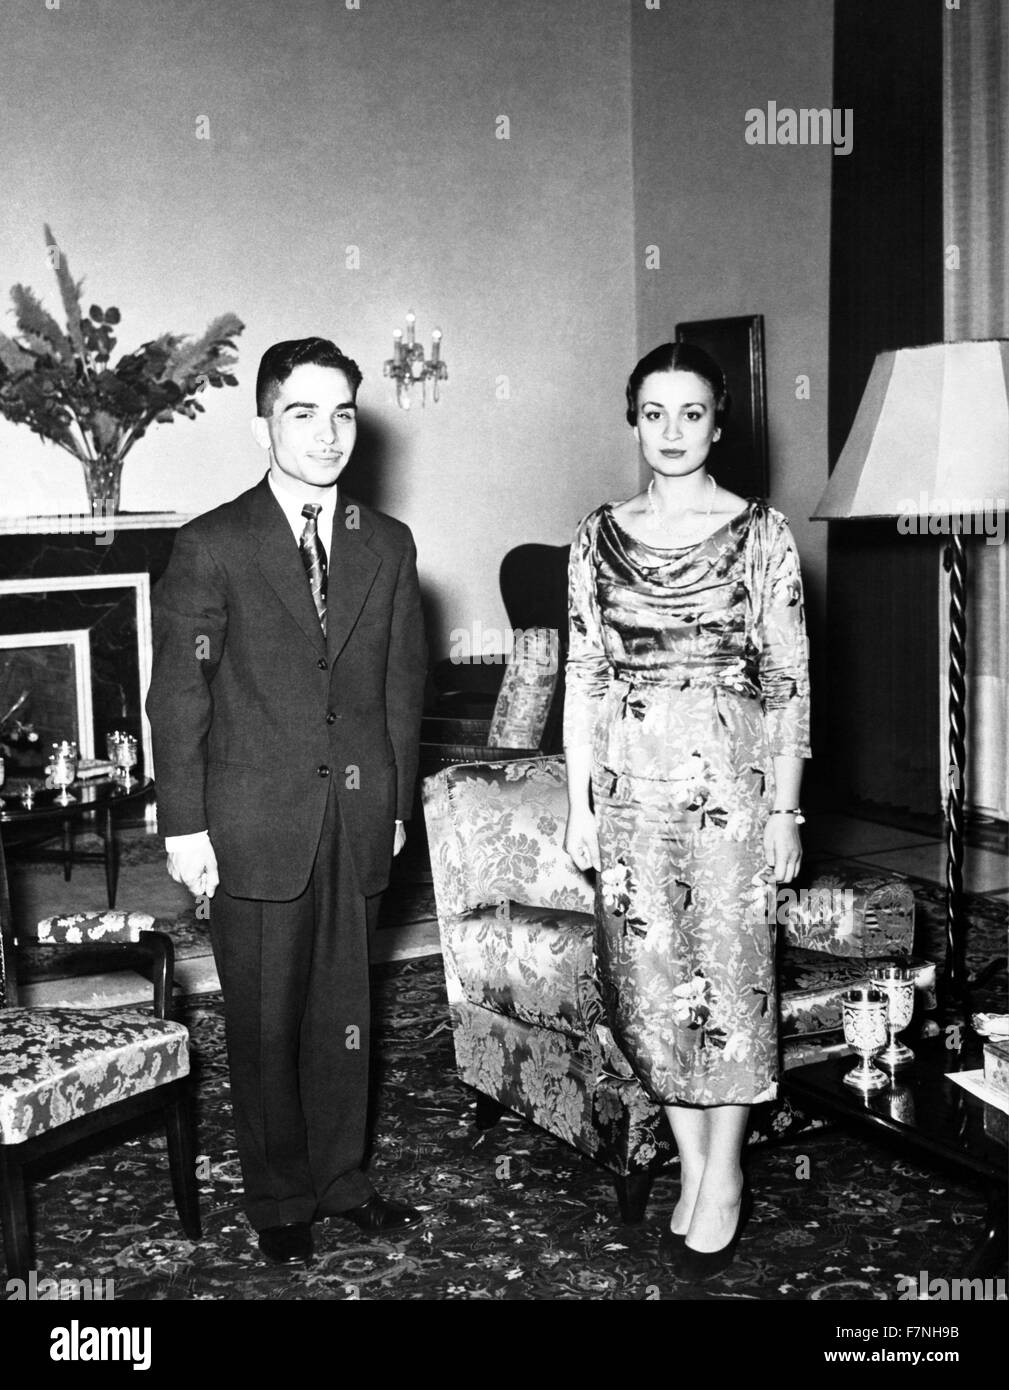 Pre-Wedding fotografia di Re Hussein di Giordania e la principessa Dina bint " Abdul-Hamid. Datato 1955 Foto Stock